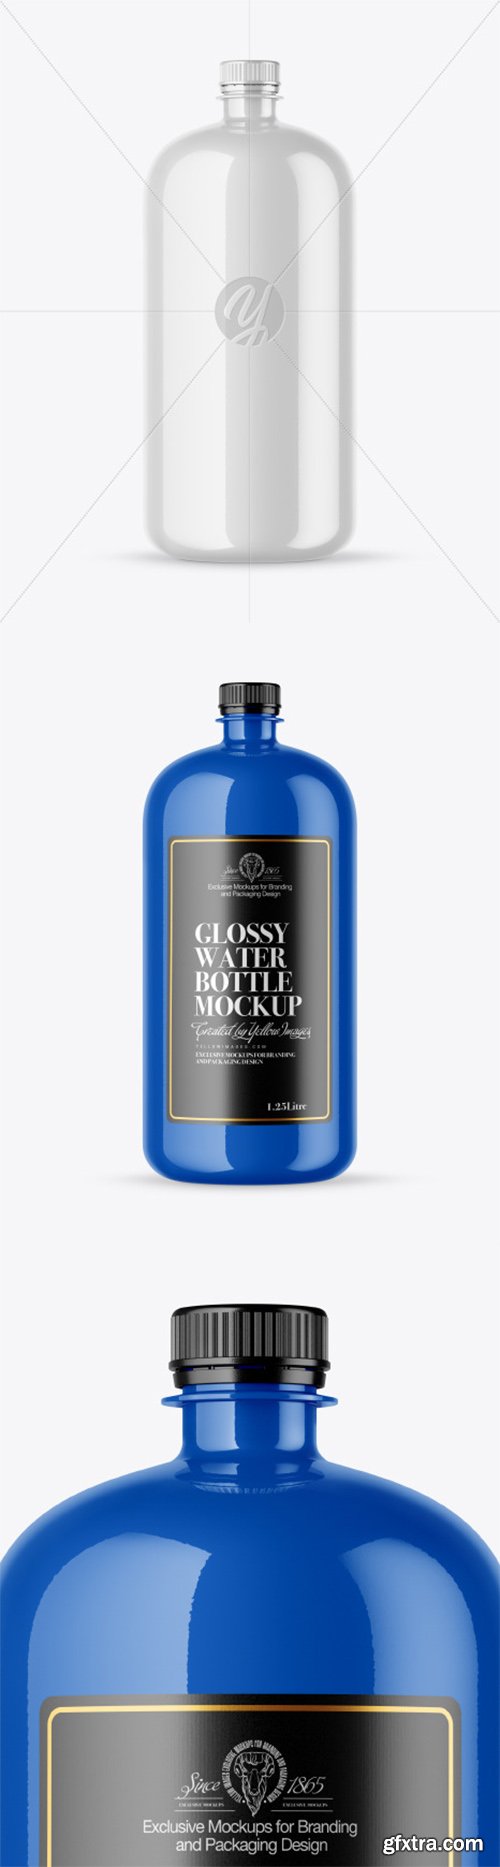 Glossy Water Bottle Mockup 51986